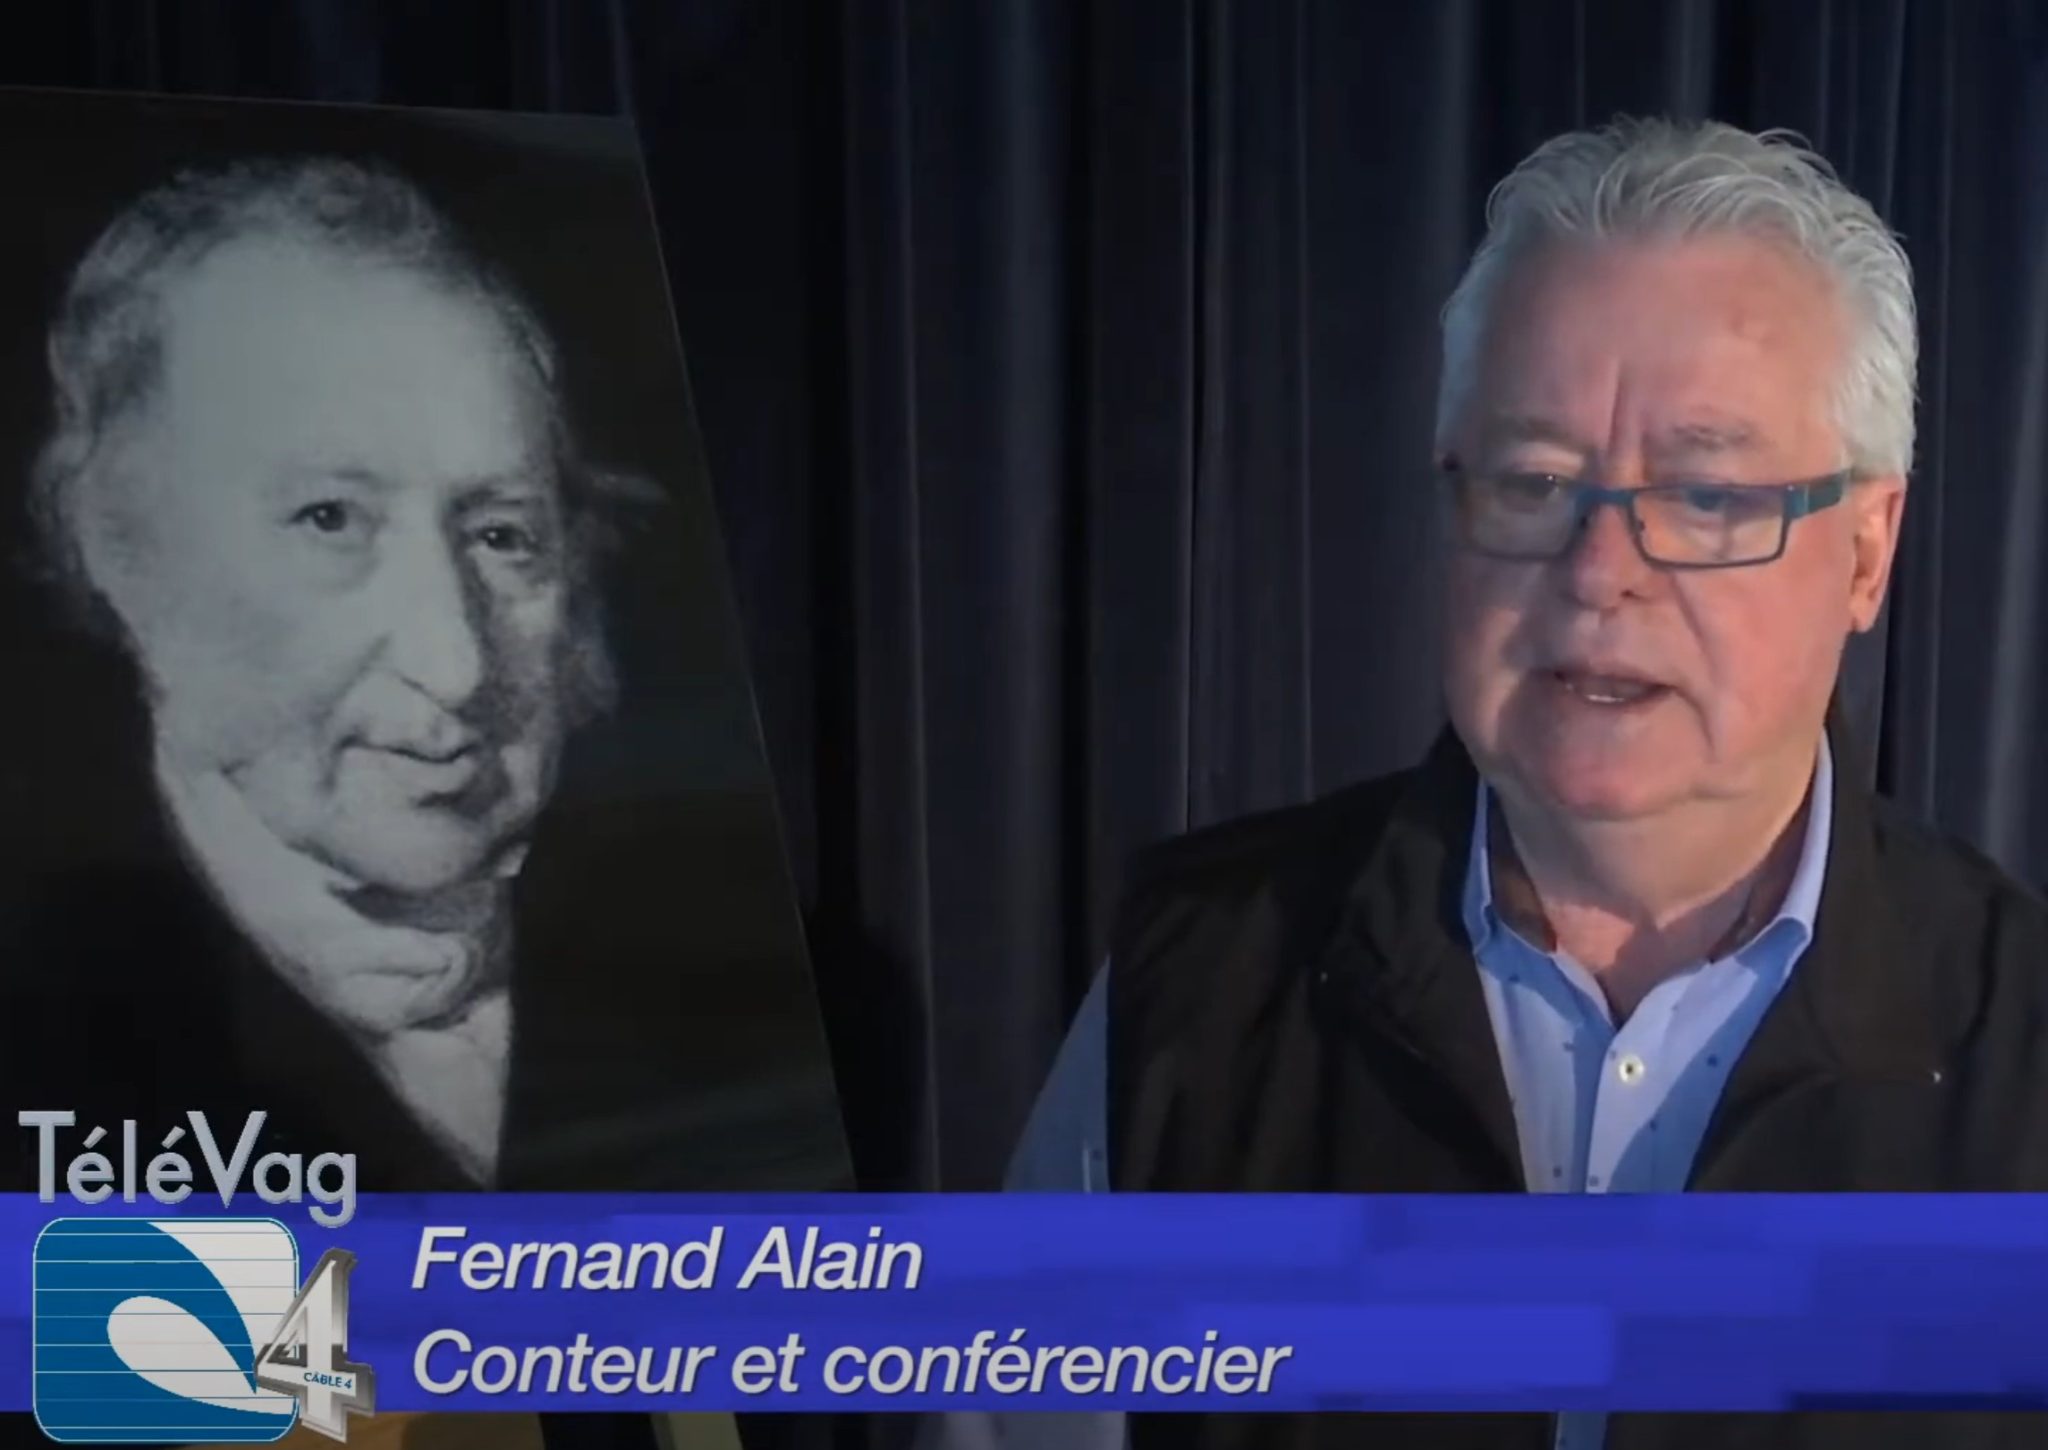 Fernand Alain, conteur et conférencier.